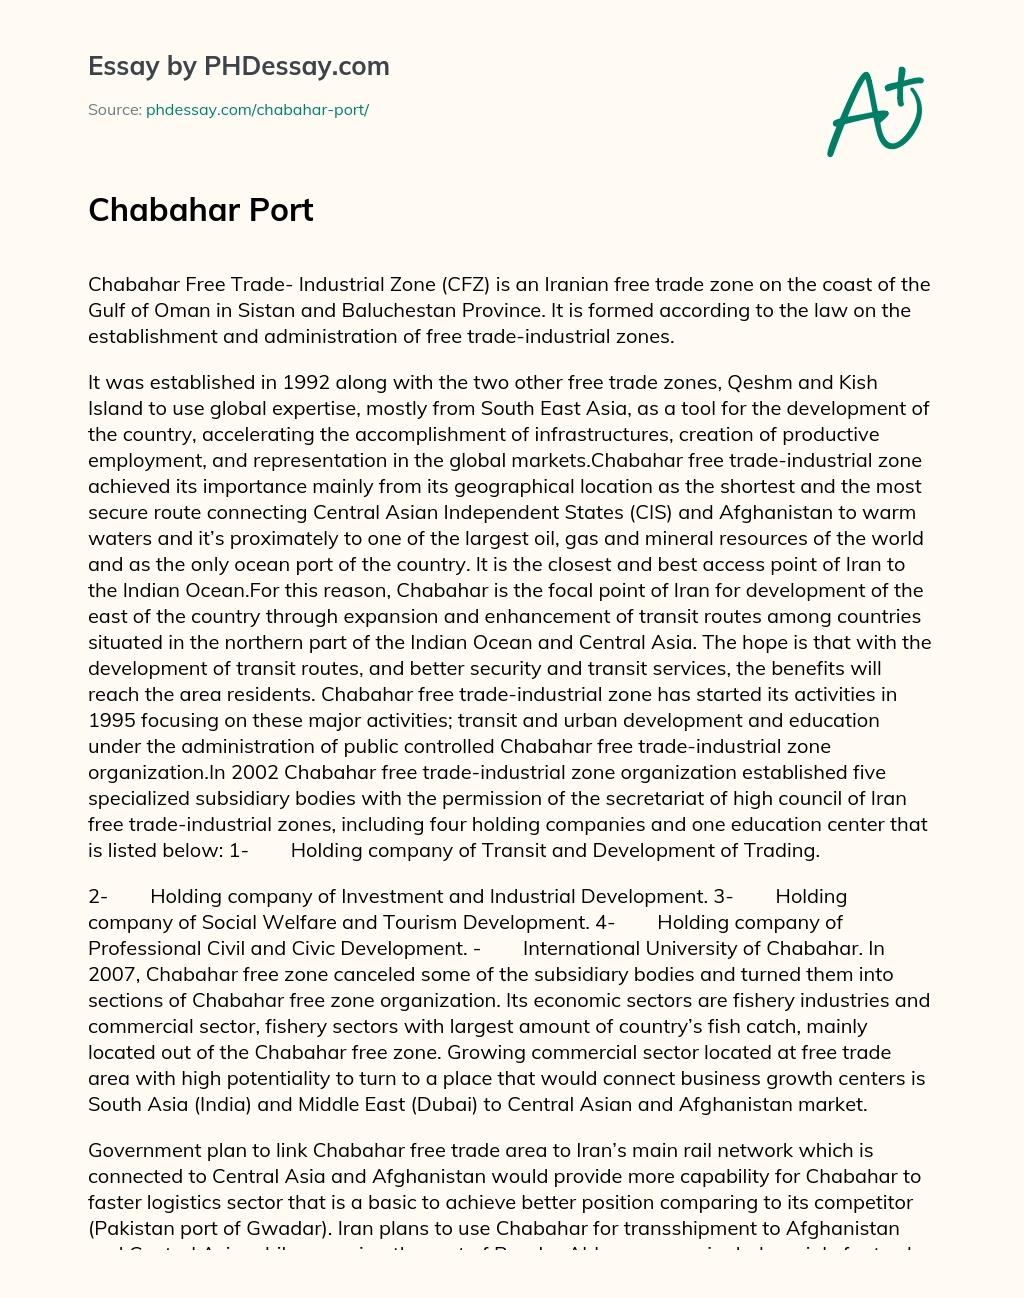 Chabahar Port essay